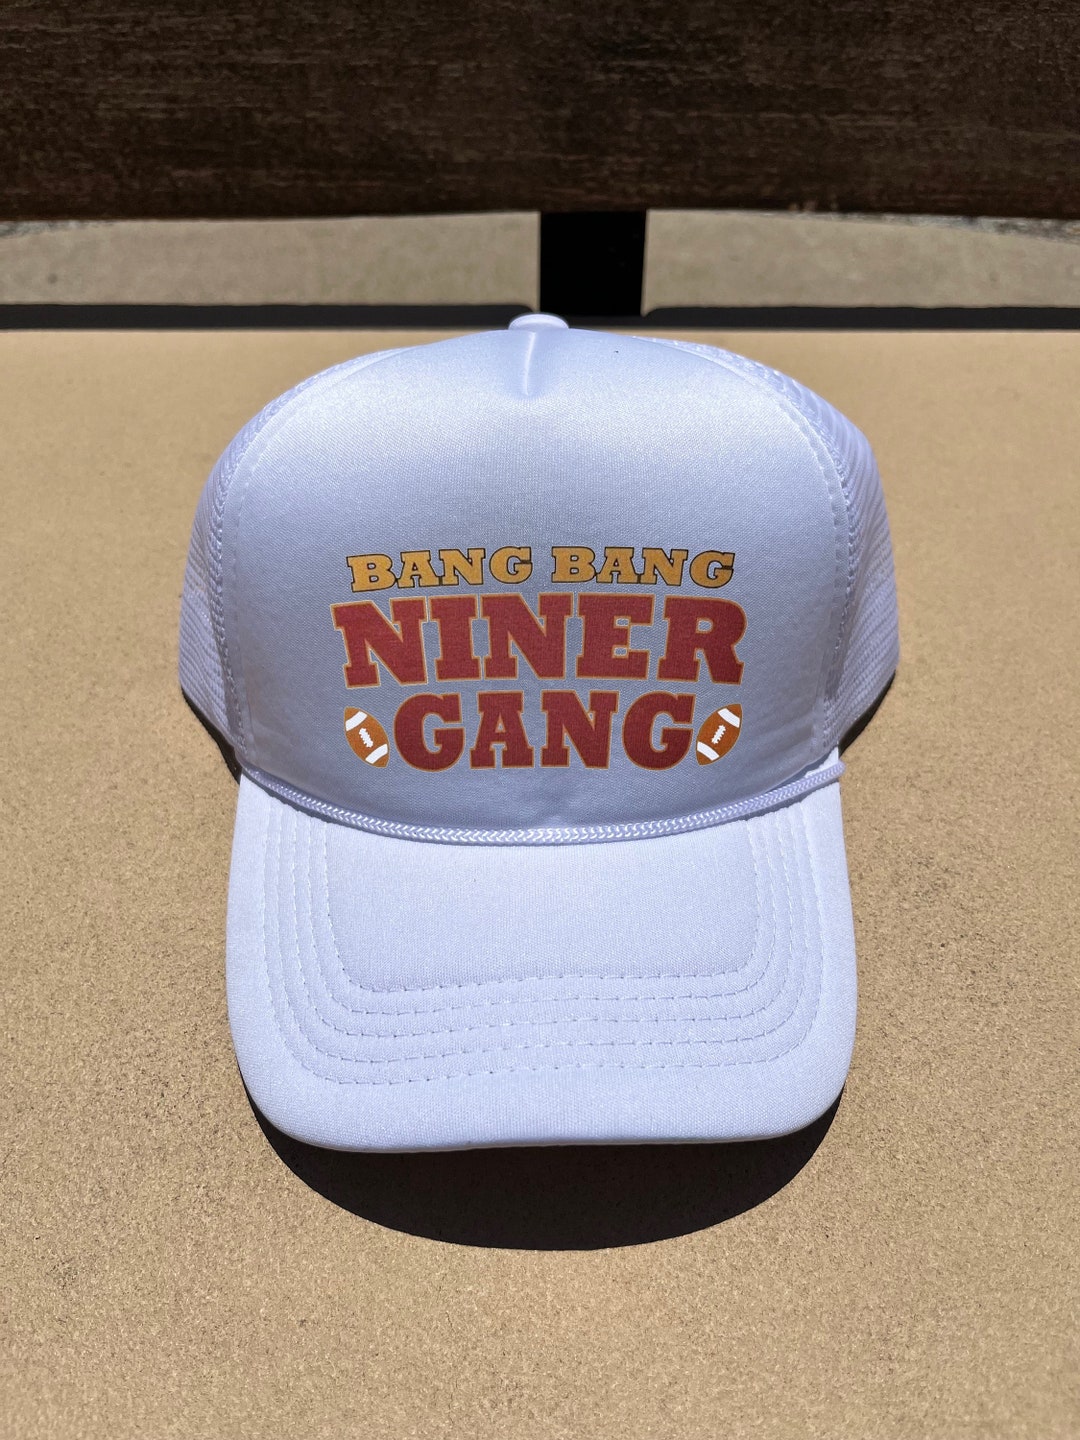 Bang Bang Niner Gang Cap Niner Cap, Niner Fan Gear, 49er, 49er Gear ...